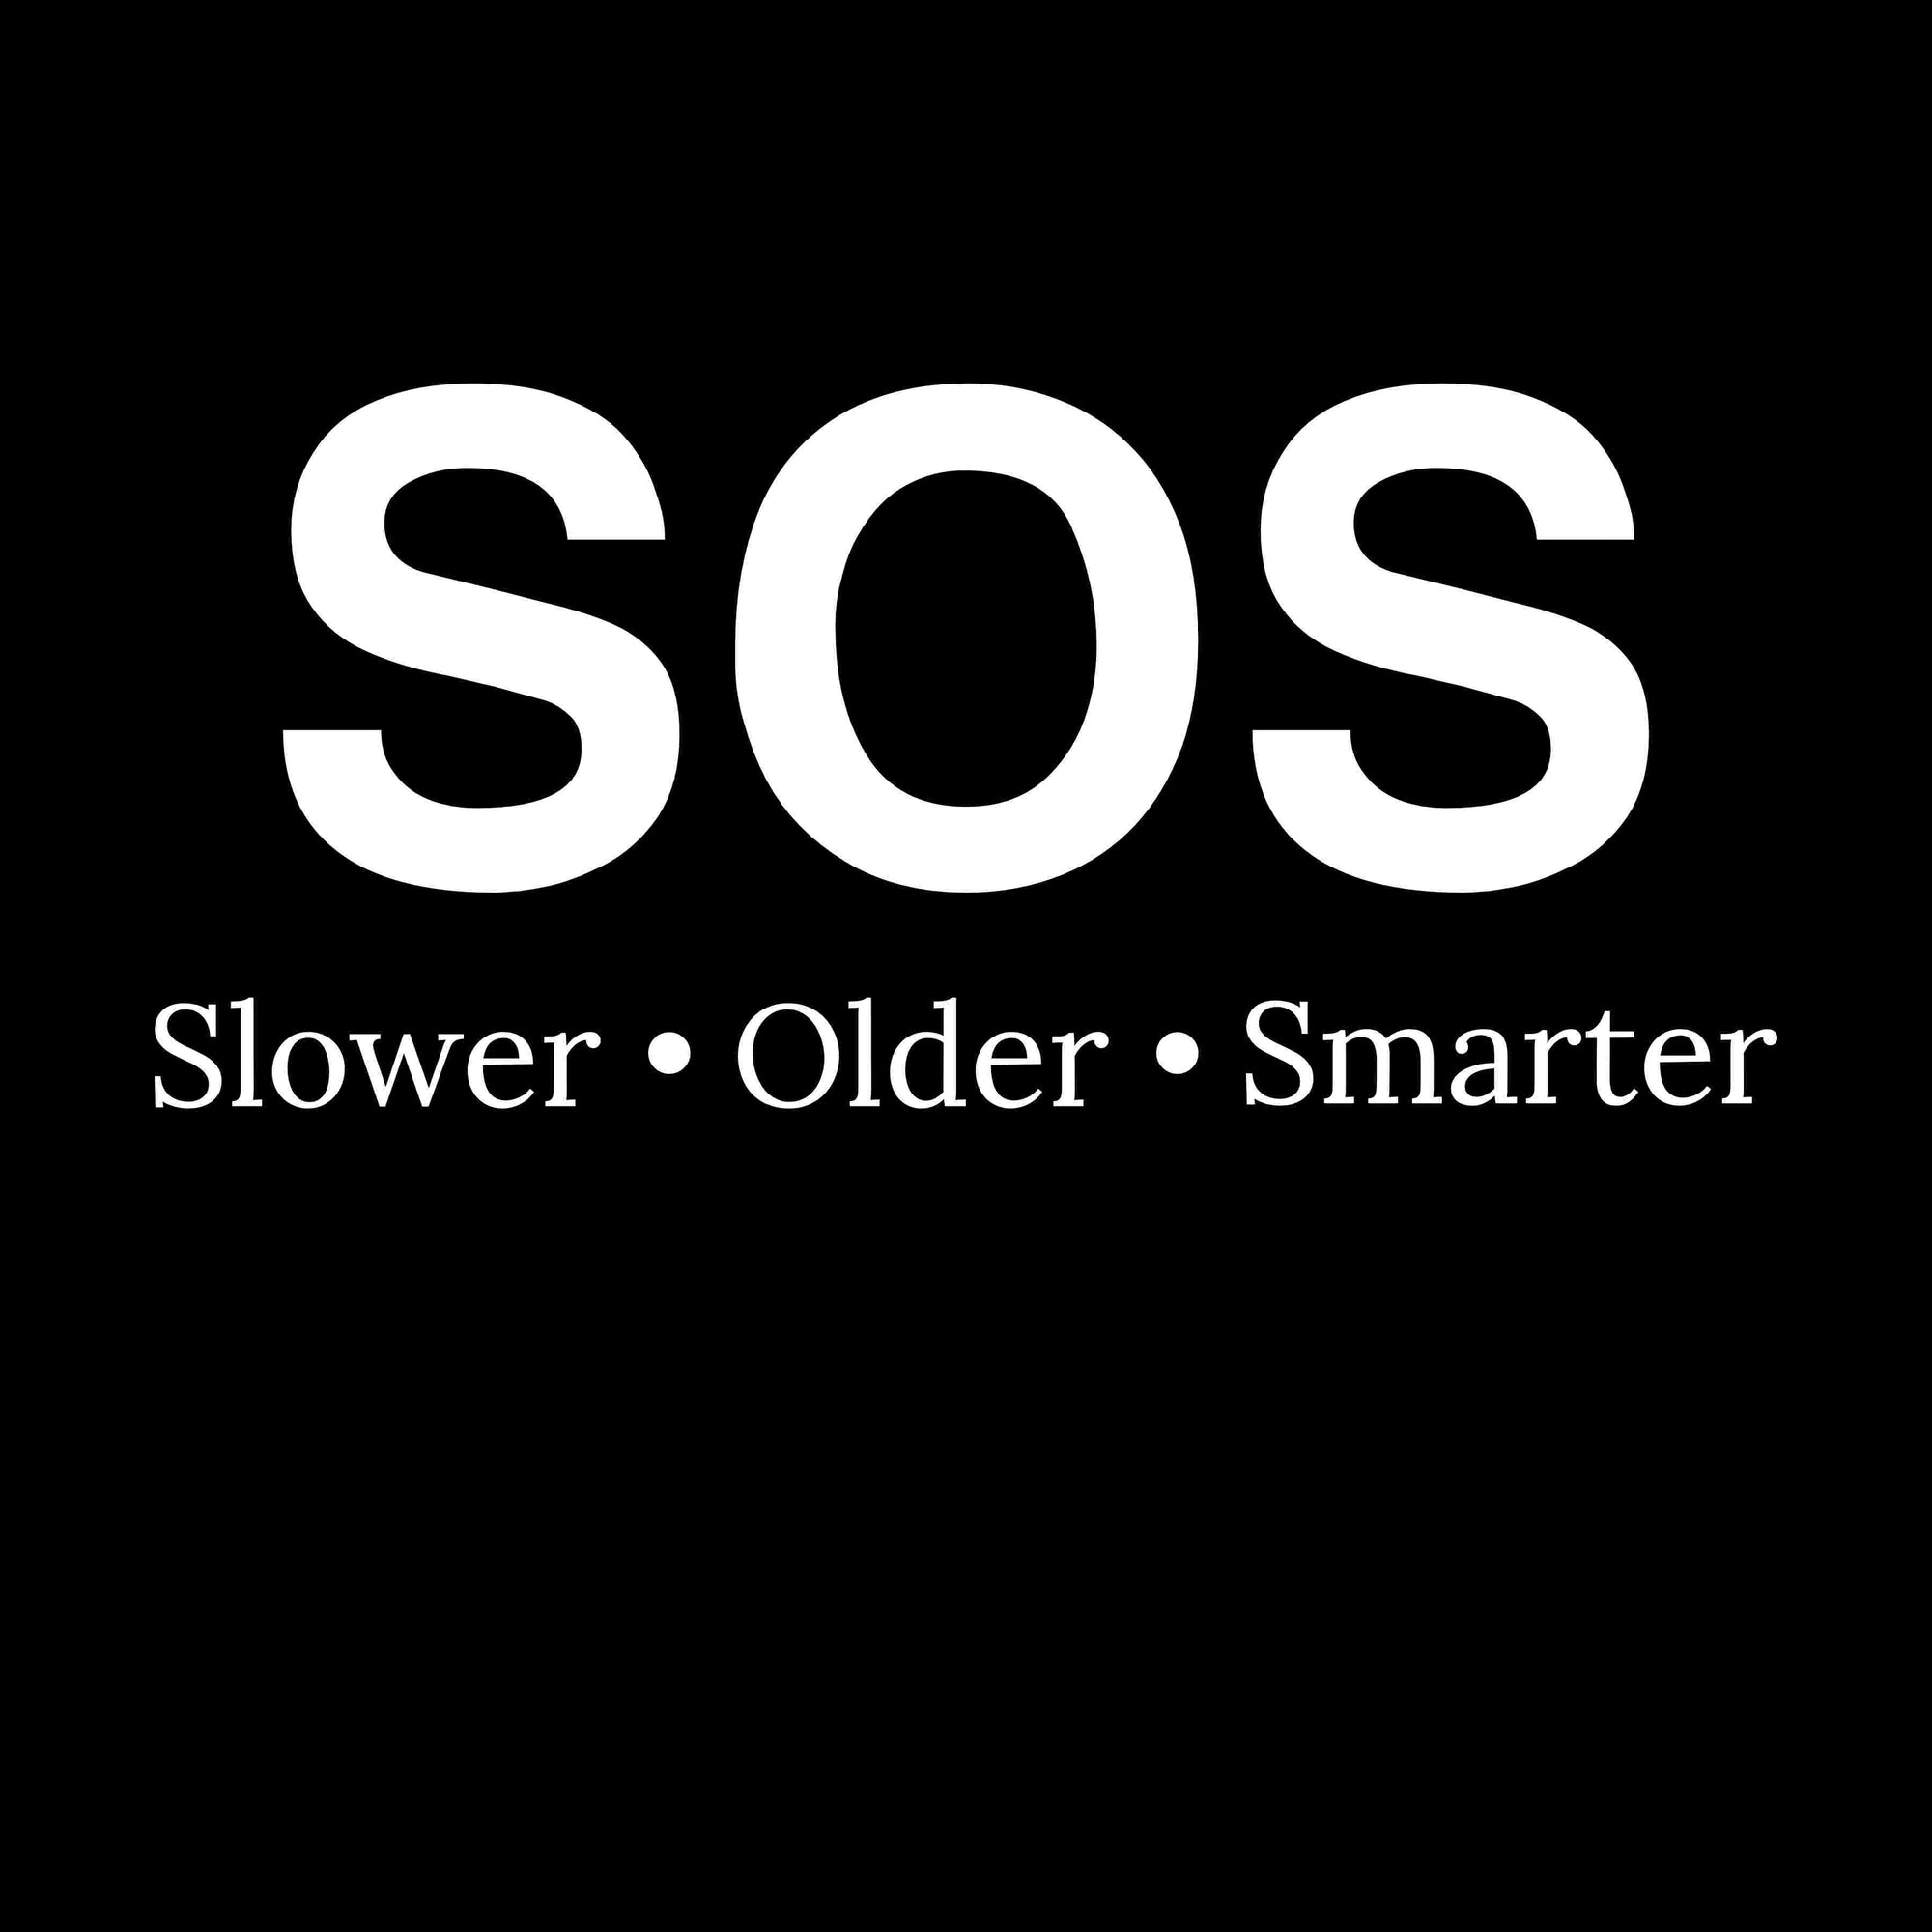 SOS-Slower Older Smarter Printed T-Shirt-Black